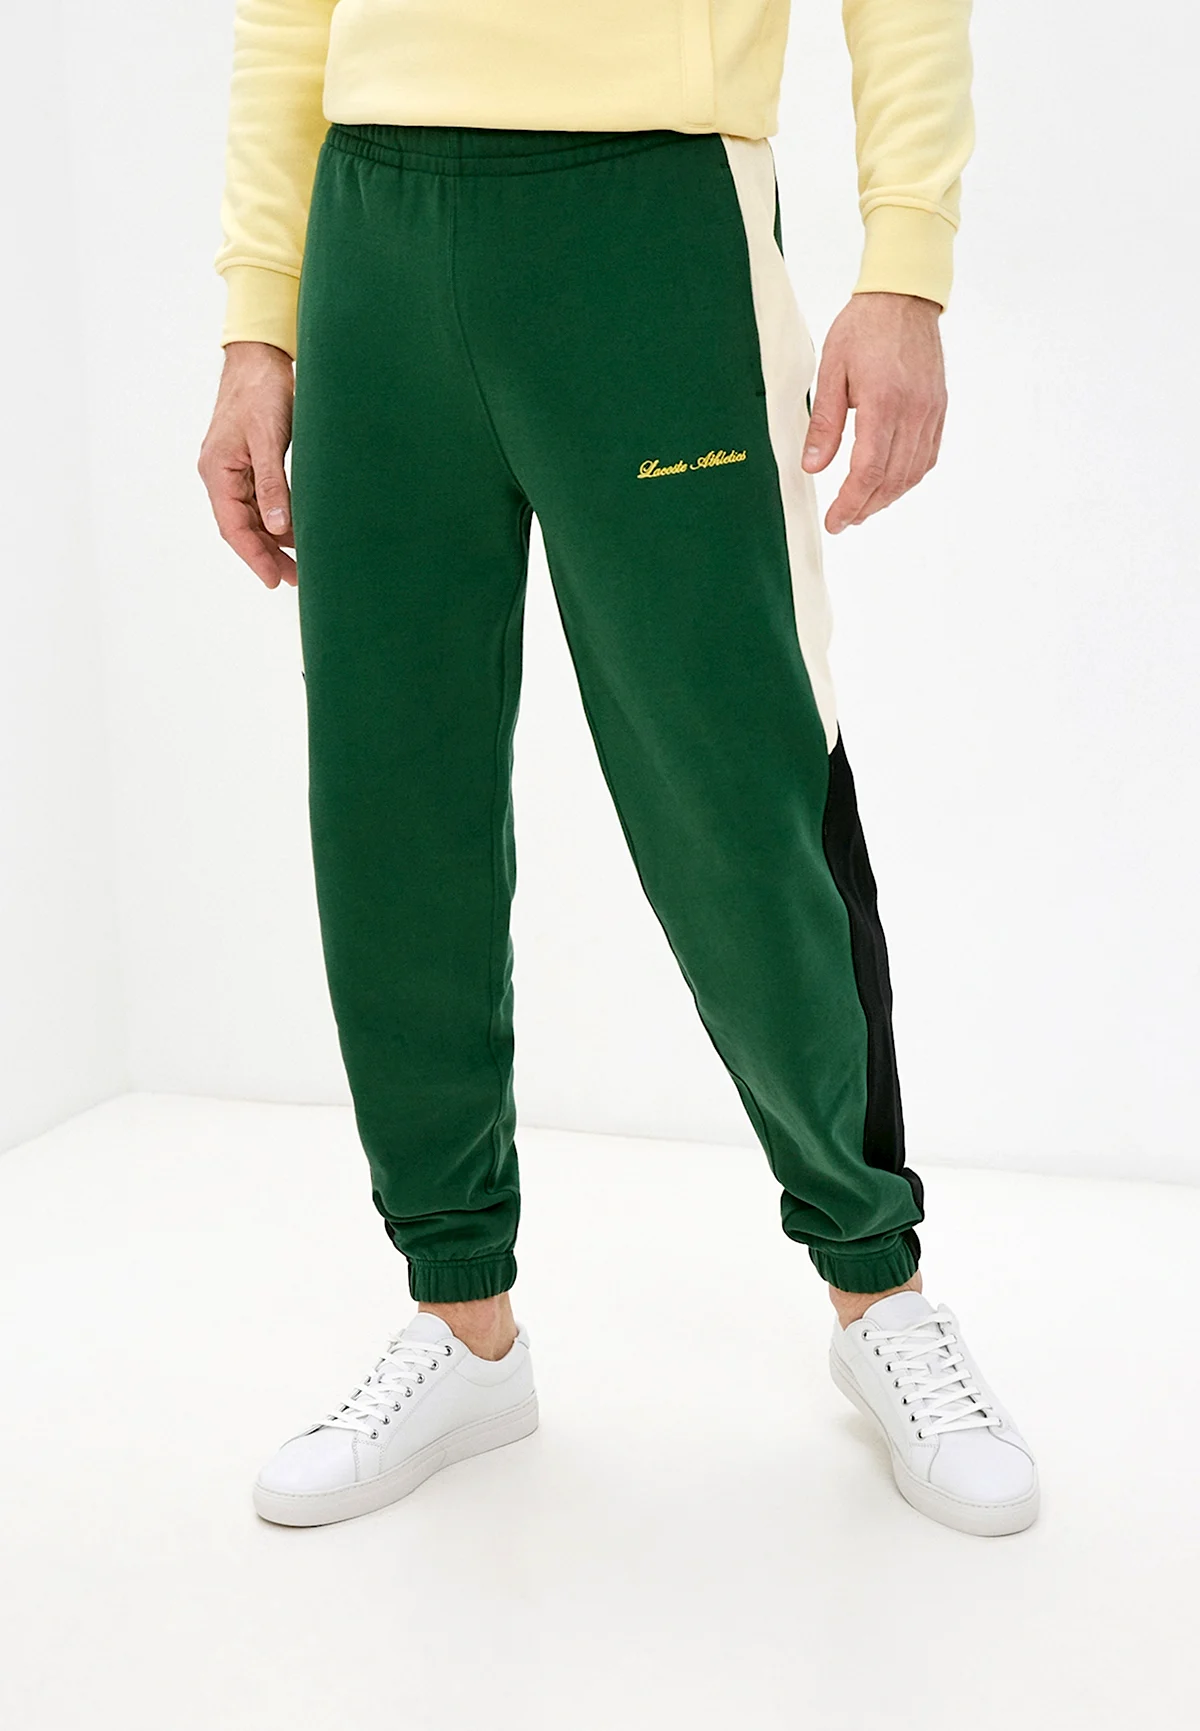 Зеленые брюки Lacoste спортивные